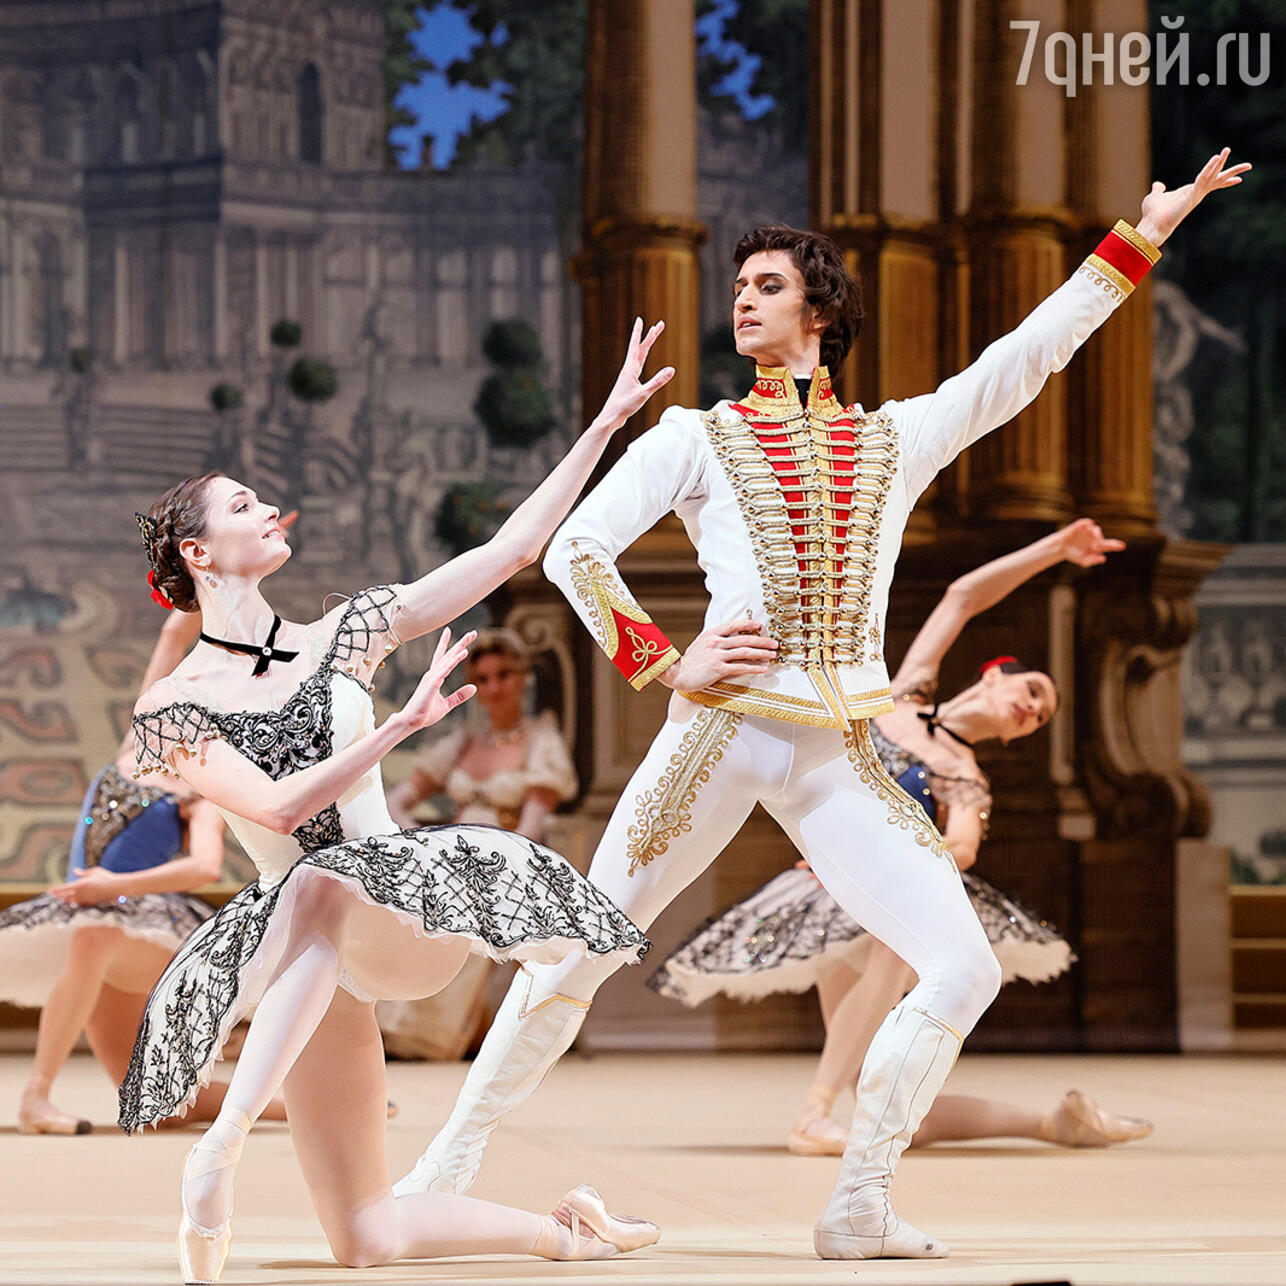 Танцовщик Сергей Полунин: балет, кино, скандалы